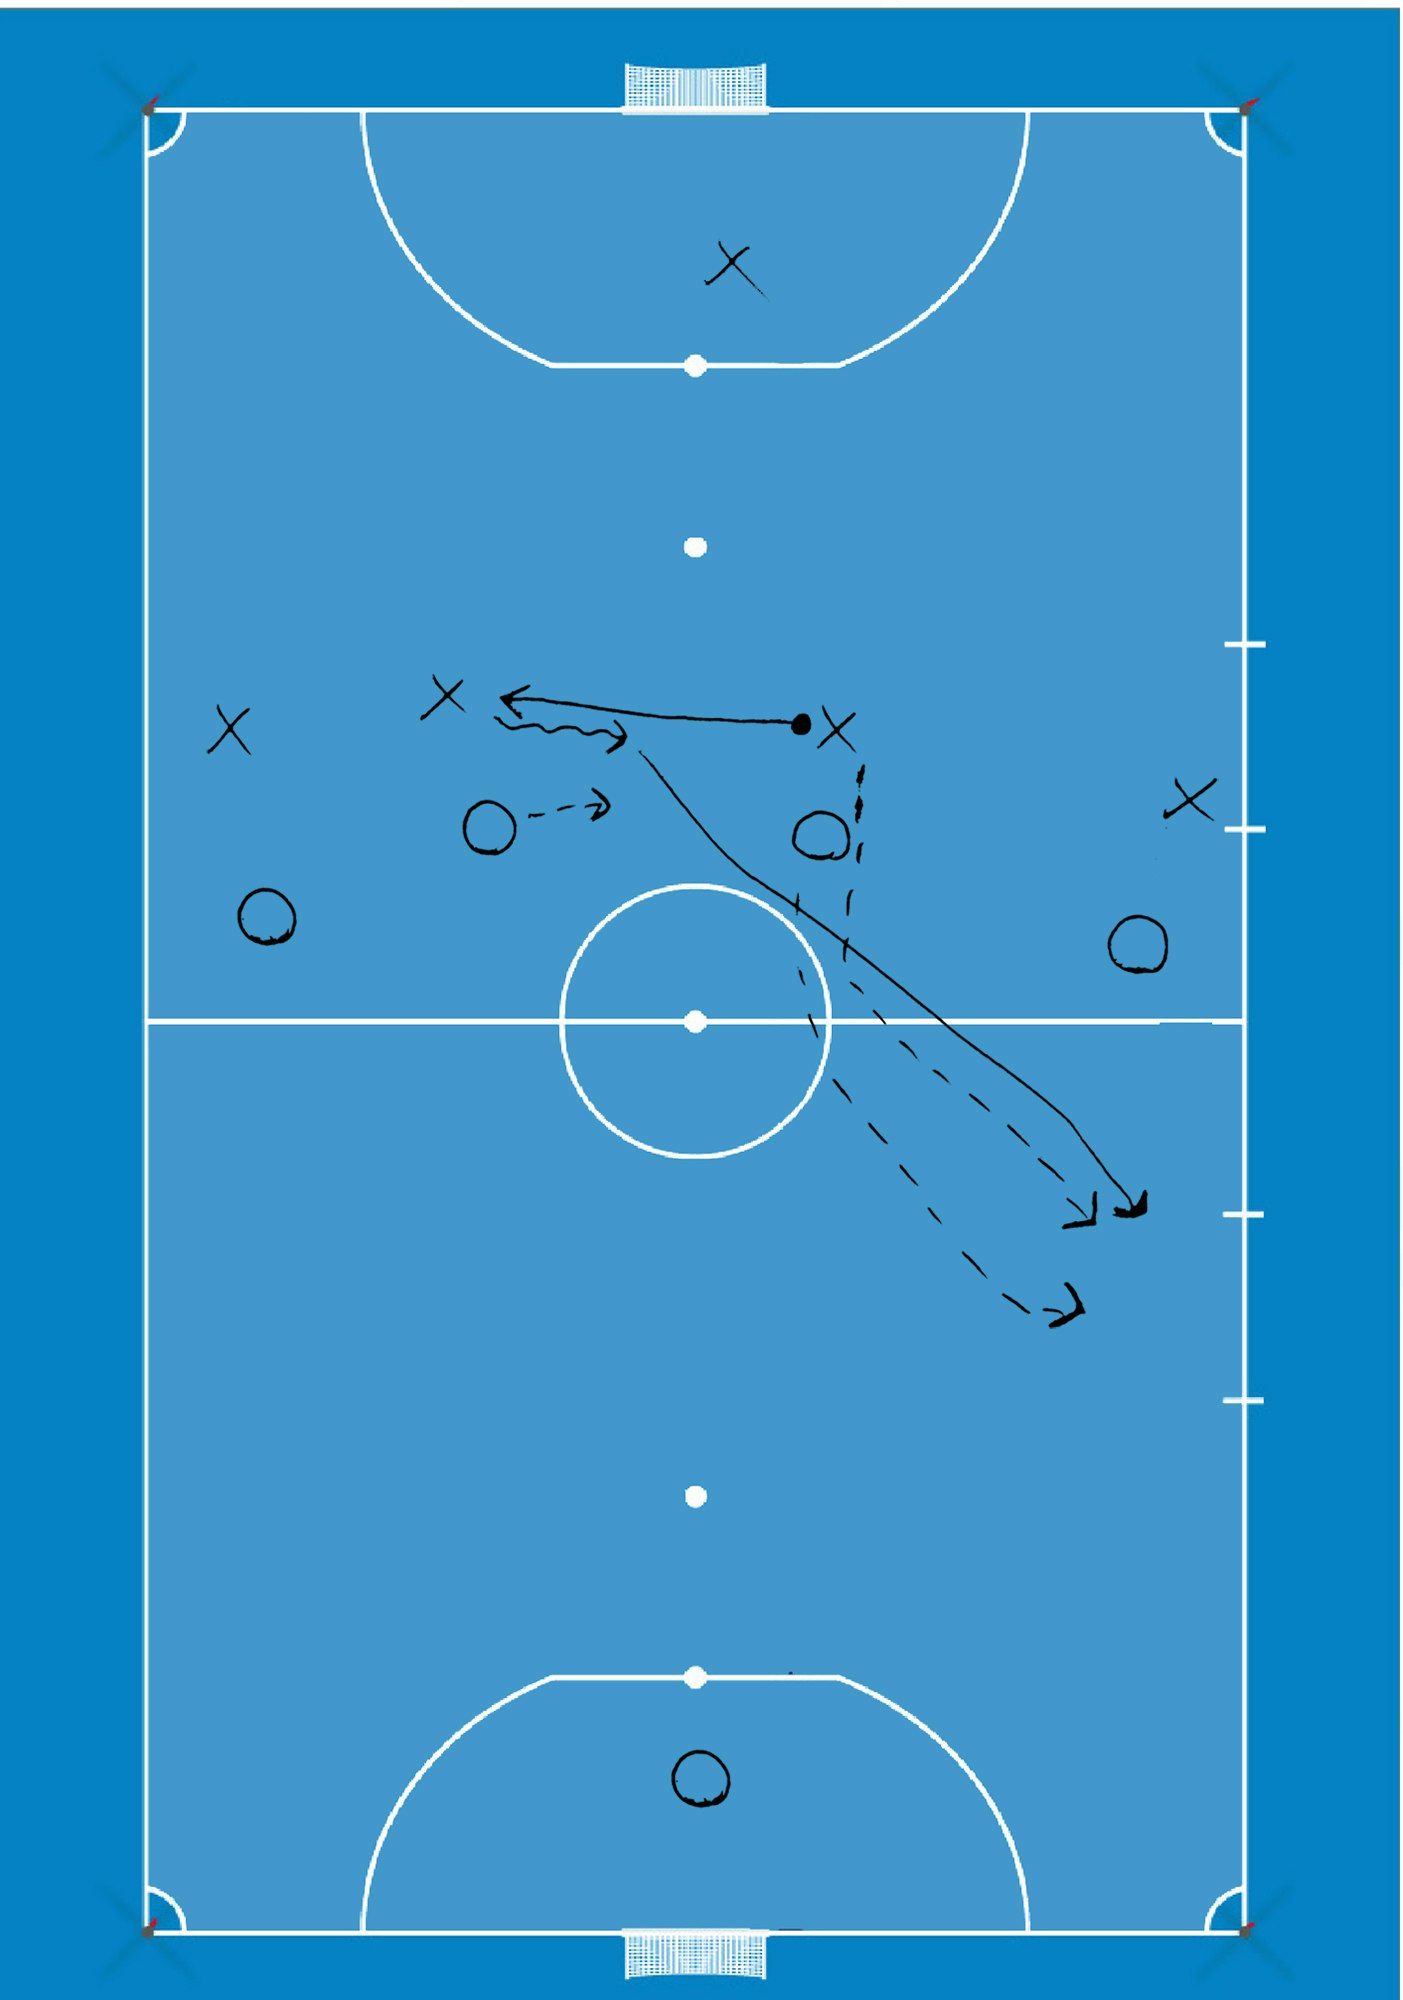 X=hyökkääjä, O=puolustaja, yhtenäinen nuoli kuvaa pallon liikettä, mutkitteleva nuoli kuljetusta ja katkoviiva pelaajan liikettä